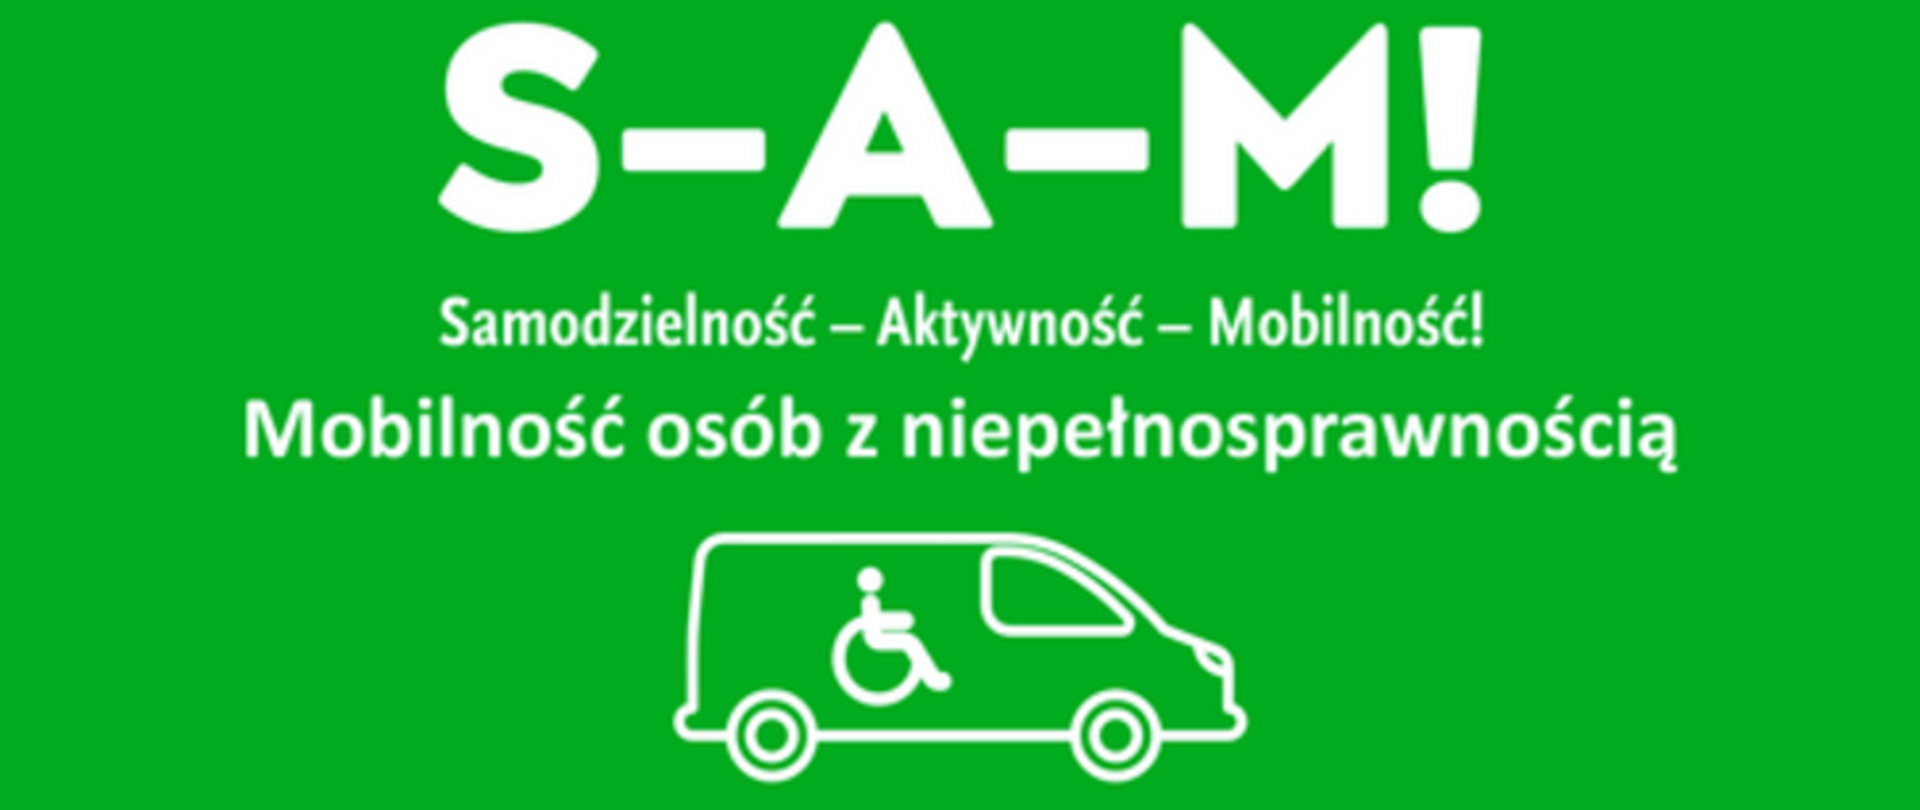 plakat z zielonym tłem i białym napisem Mobilność osób z niepełnosprawnością